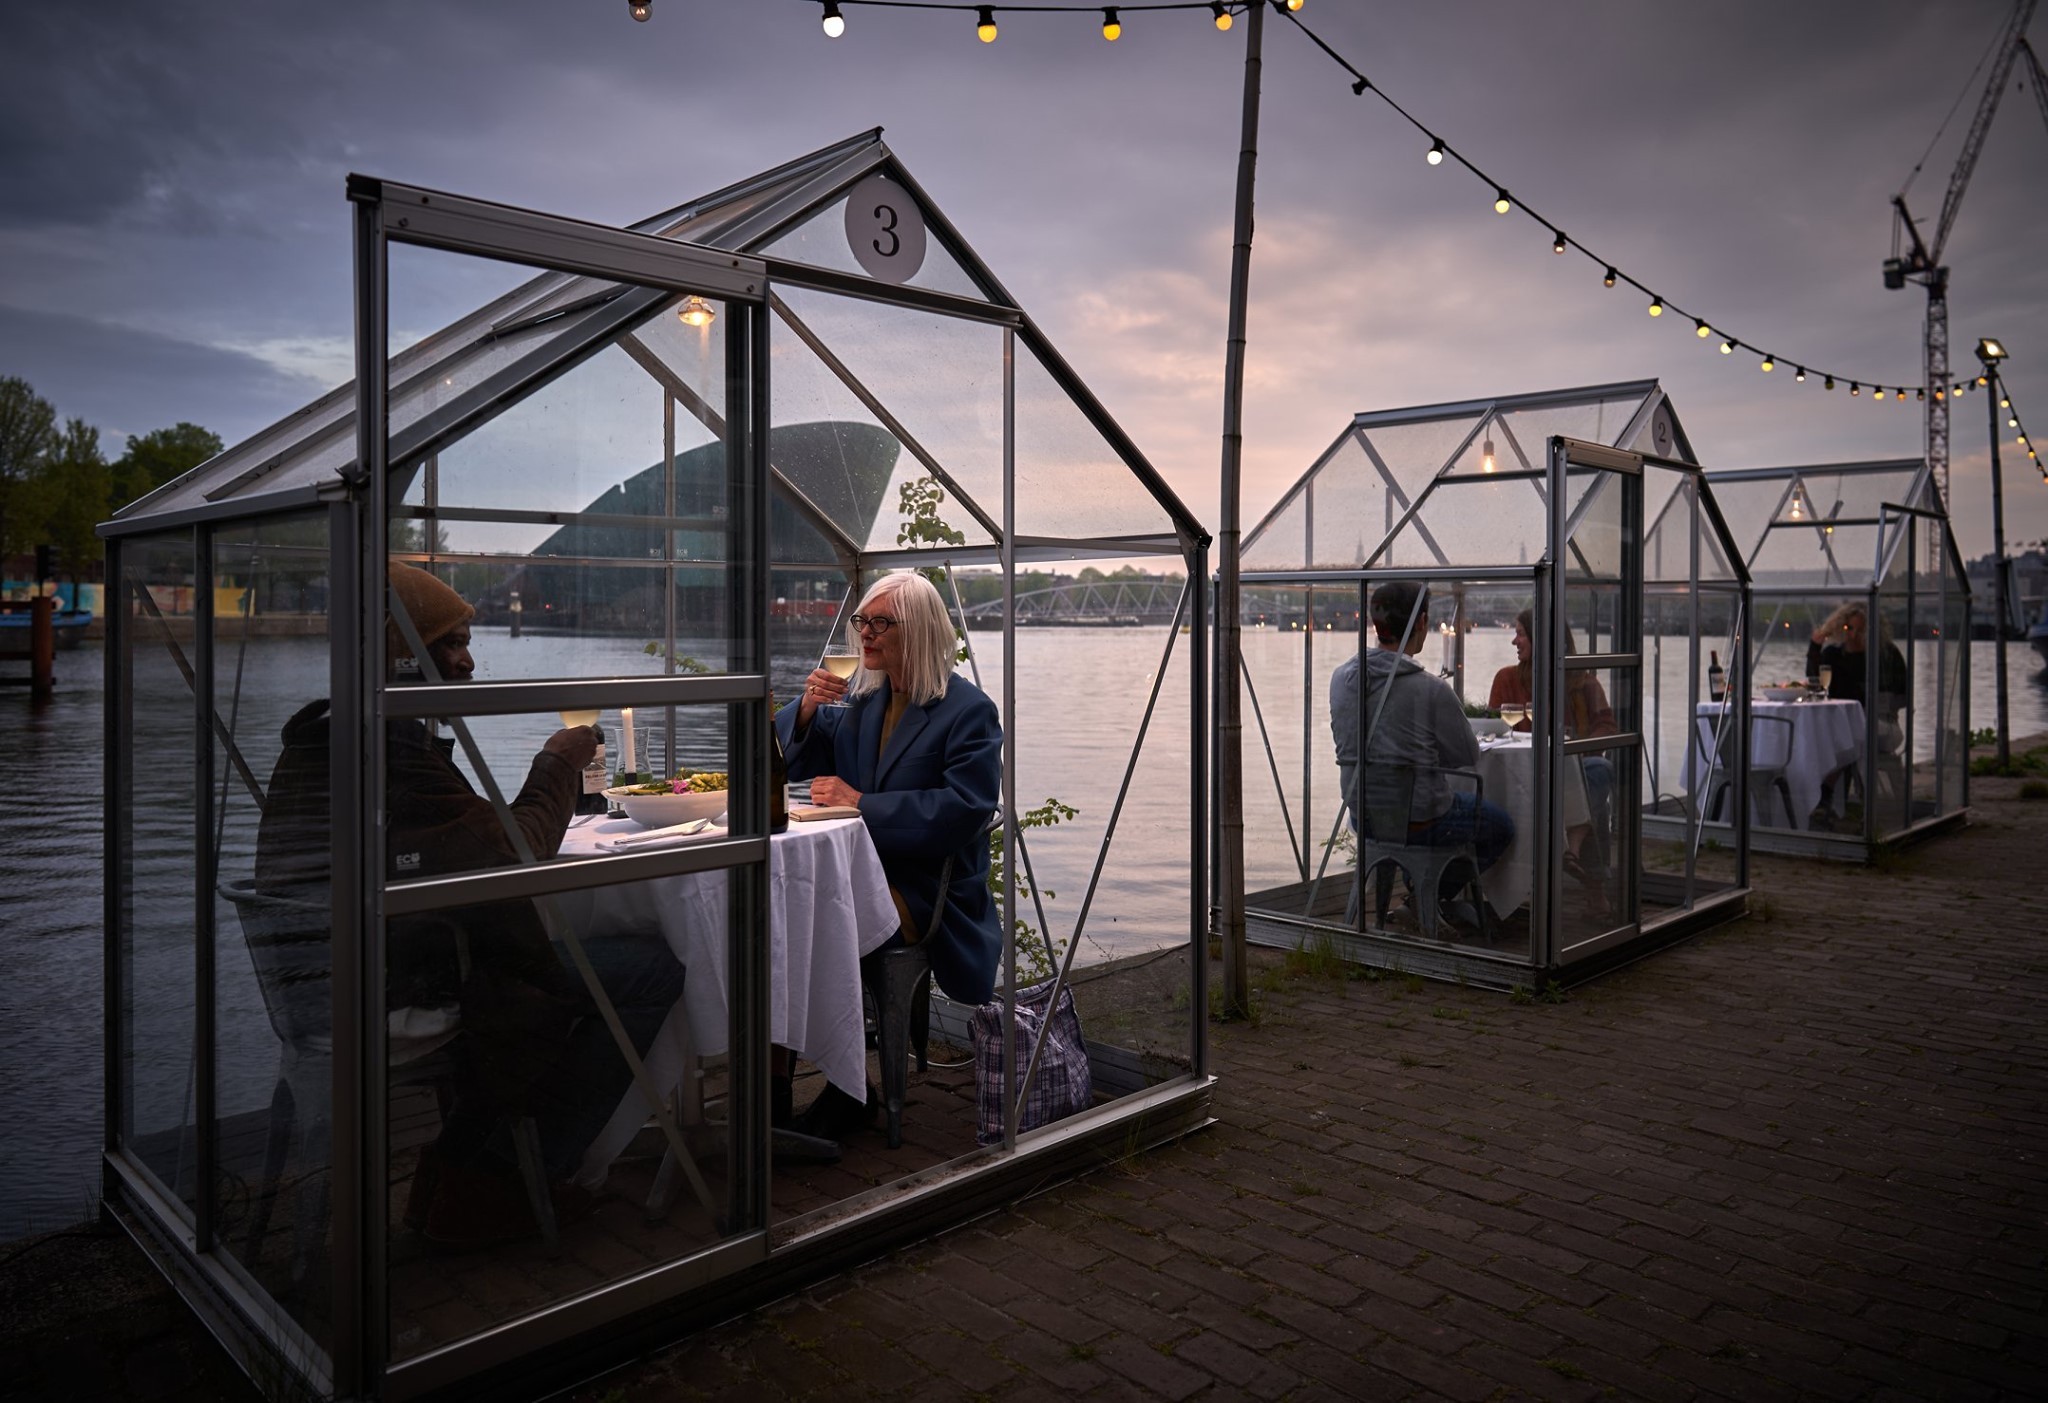 Aberto, restaurante holandês atende clientes em cabine de vidro (Foto: Reprodução | Facebook)